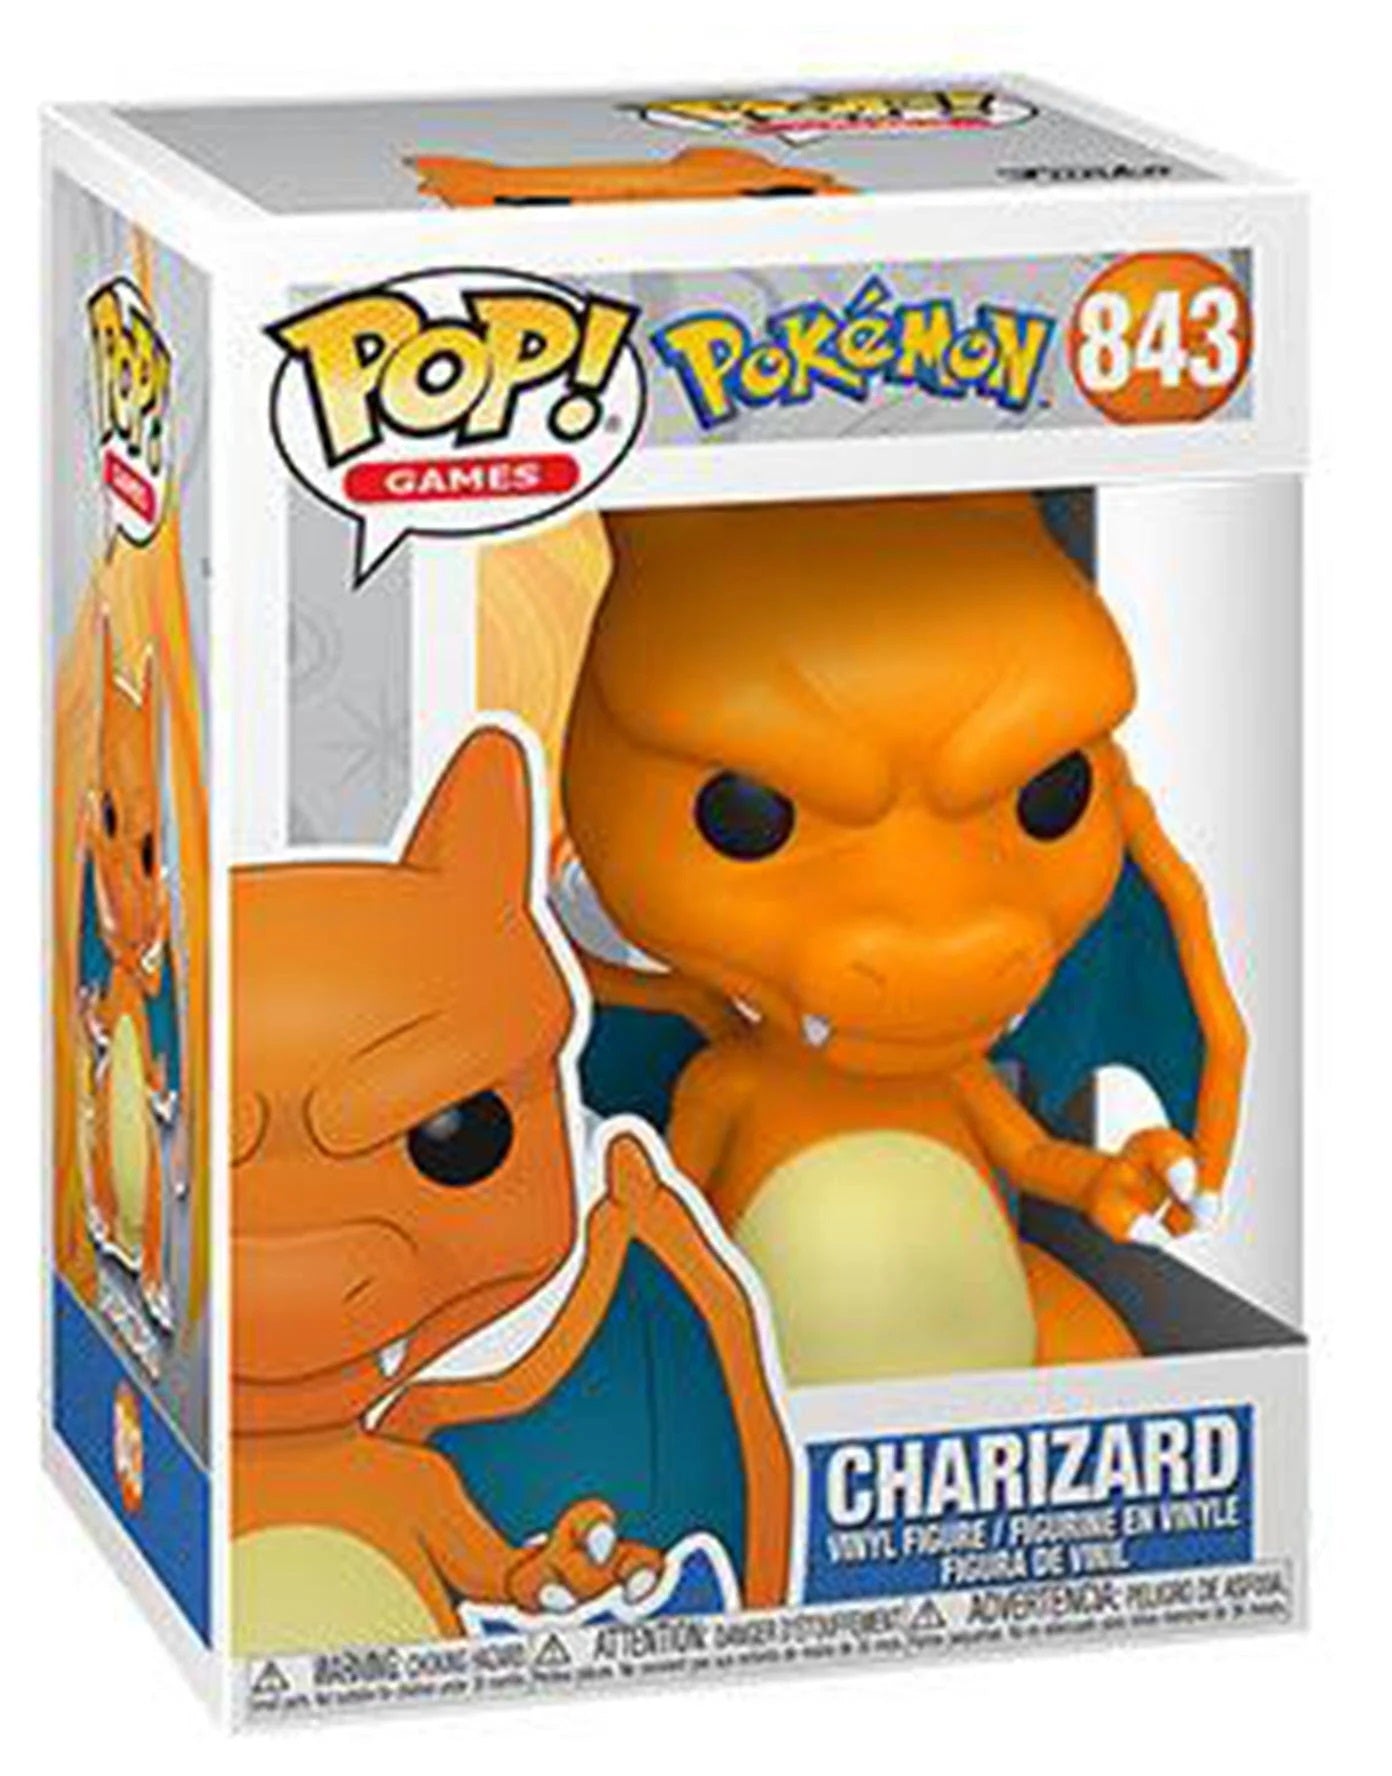 Charizard Funko POP! (Pokémon) 843